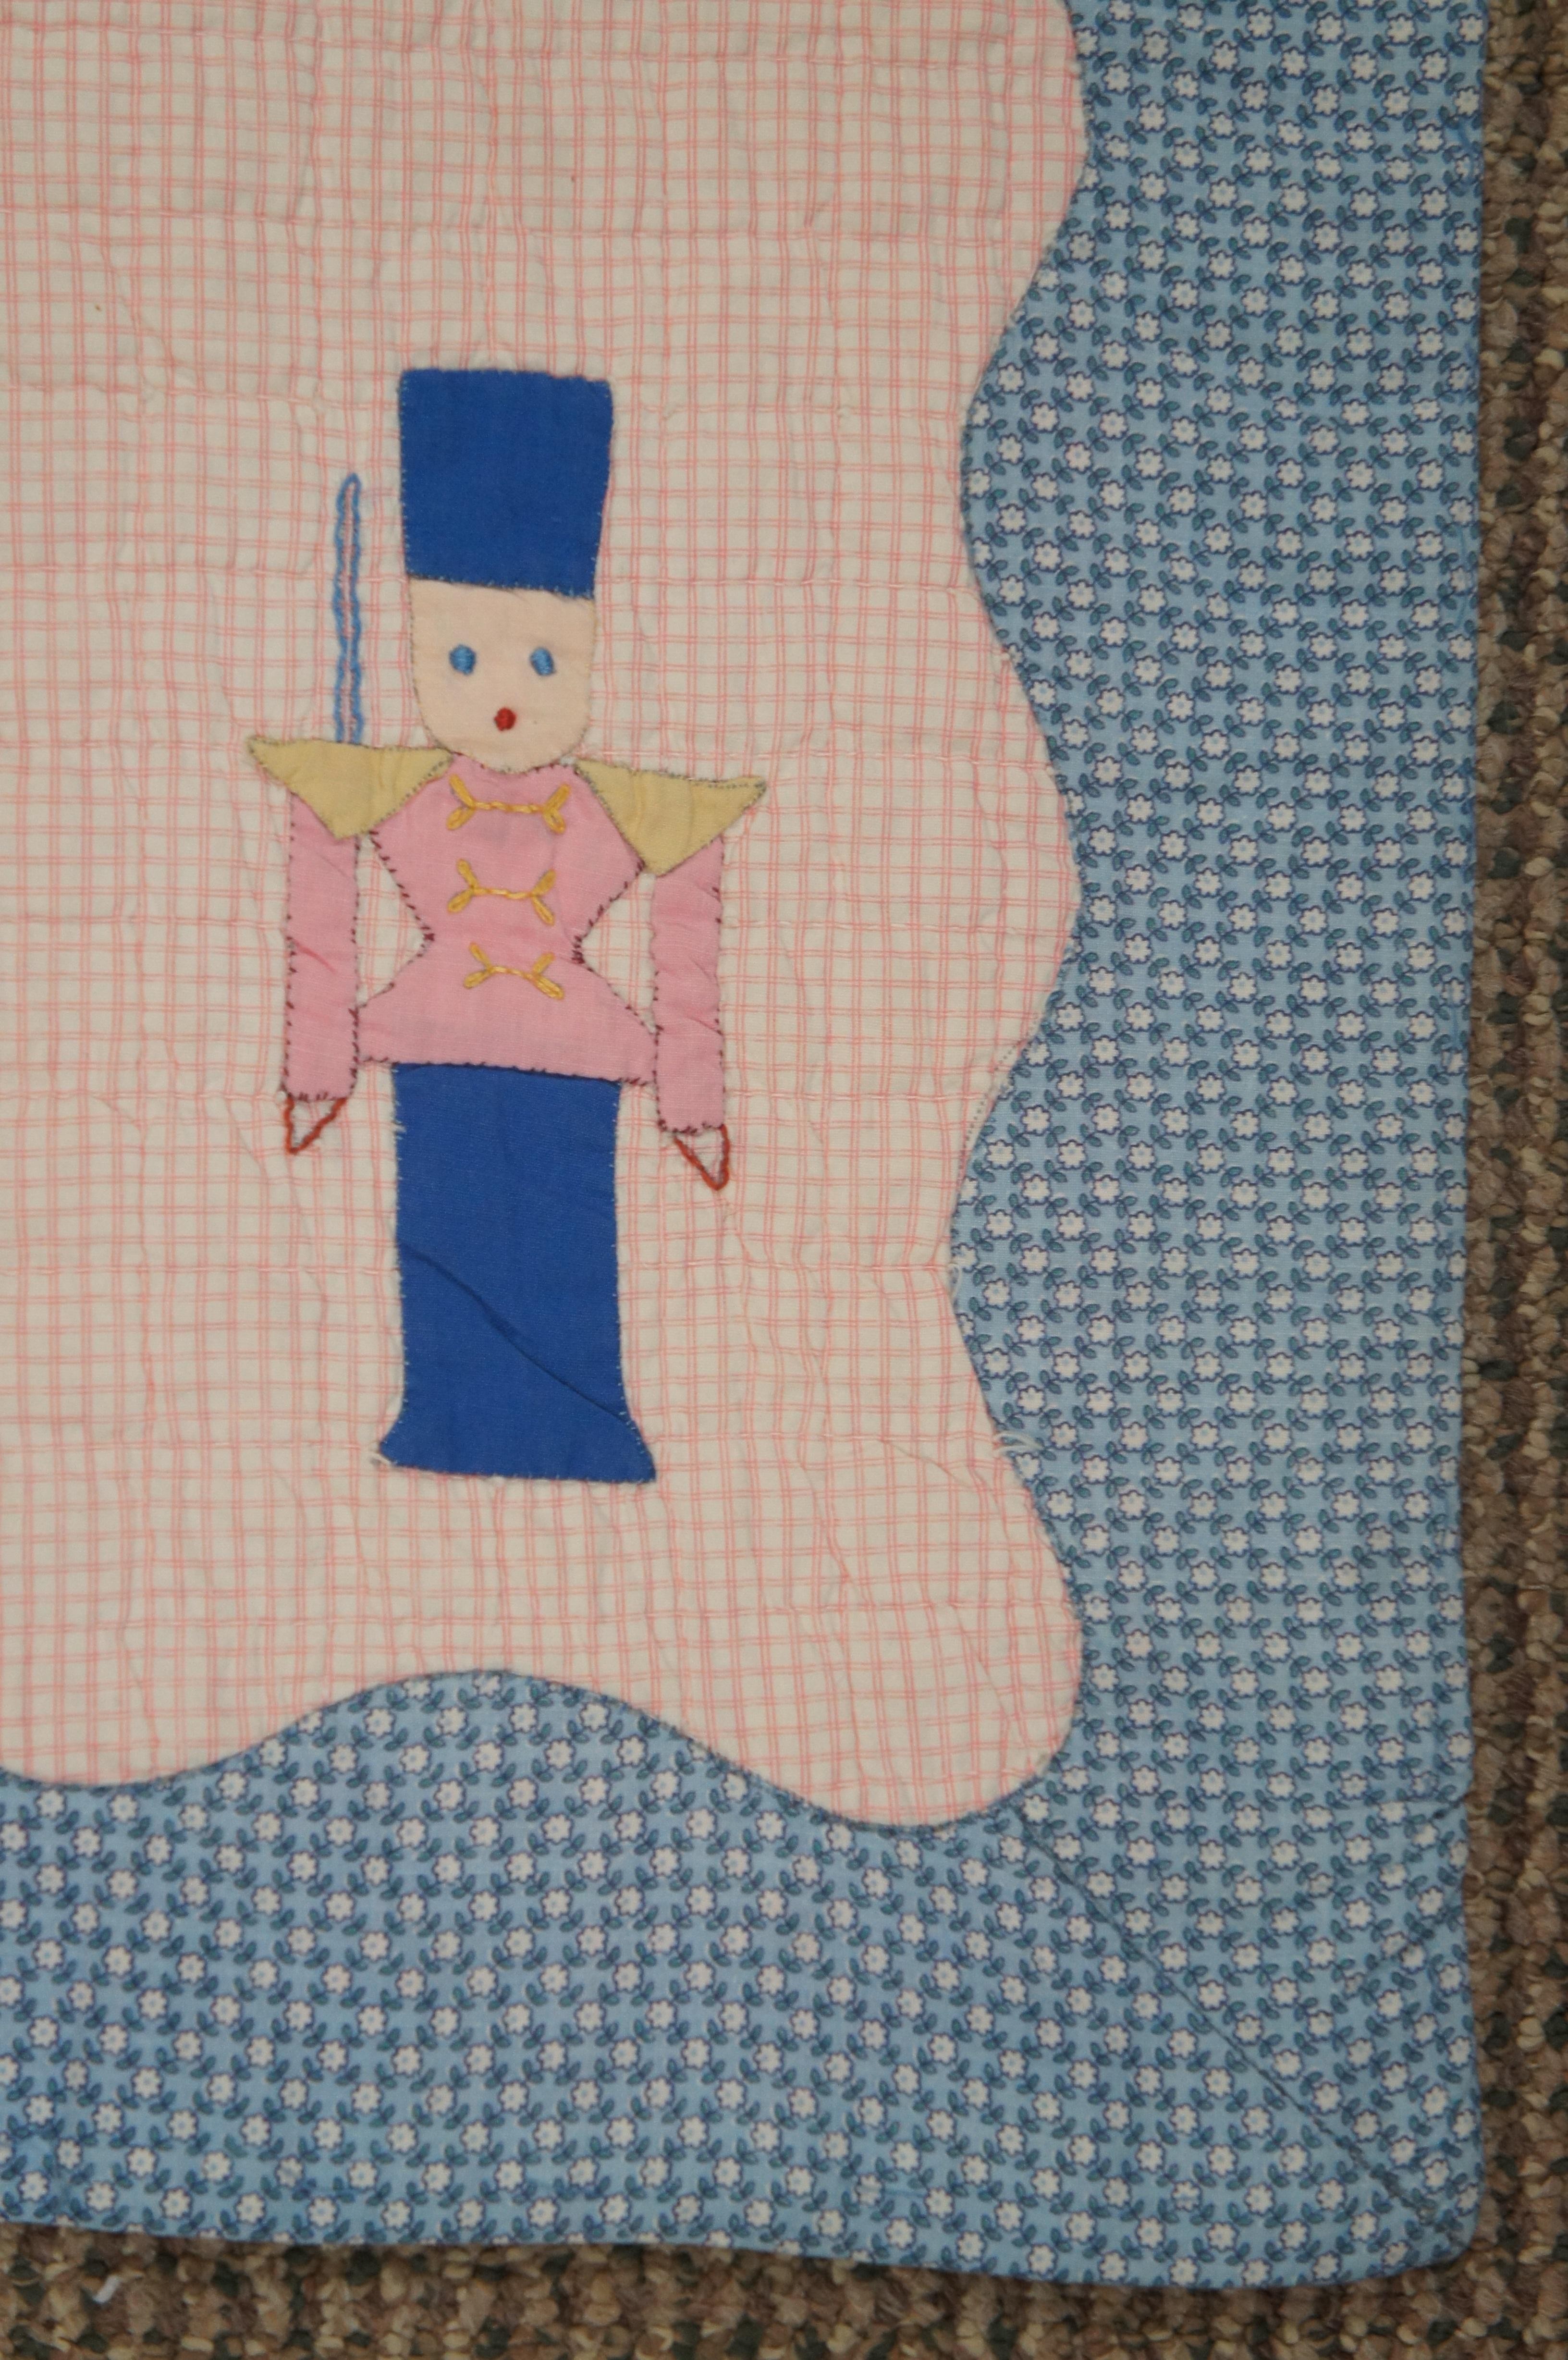 1960s Vintage Merry Go Round Crib Quilt Applique Cotton Childrens Toddler 53.5